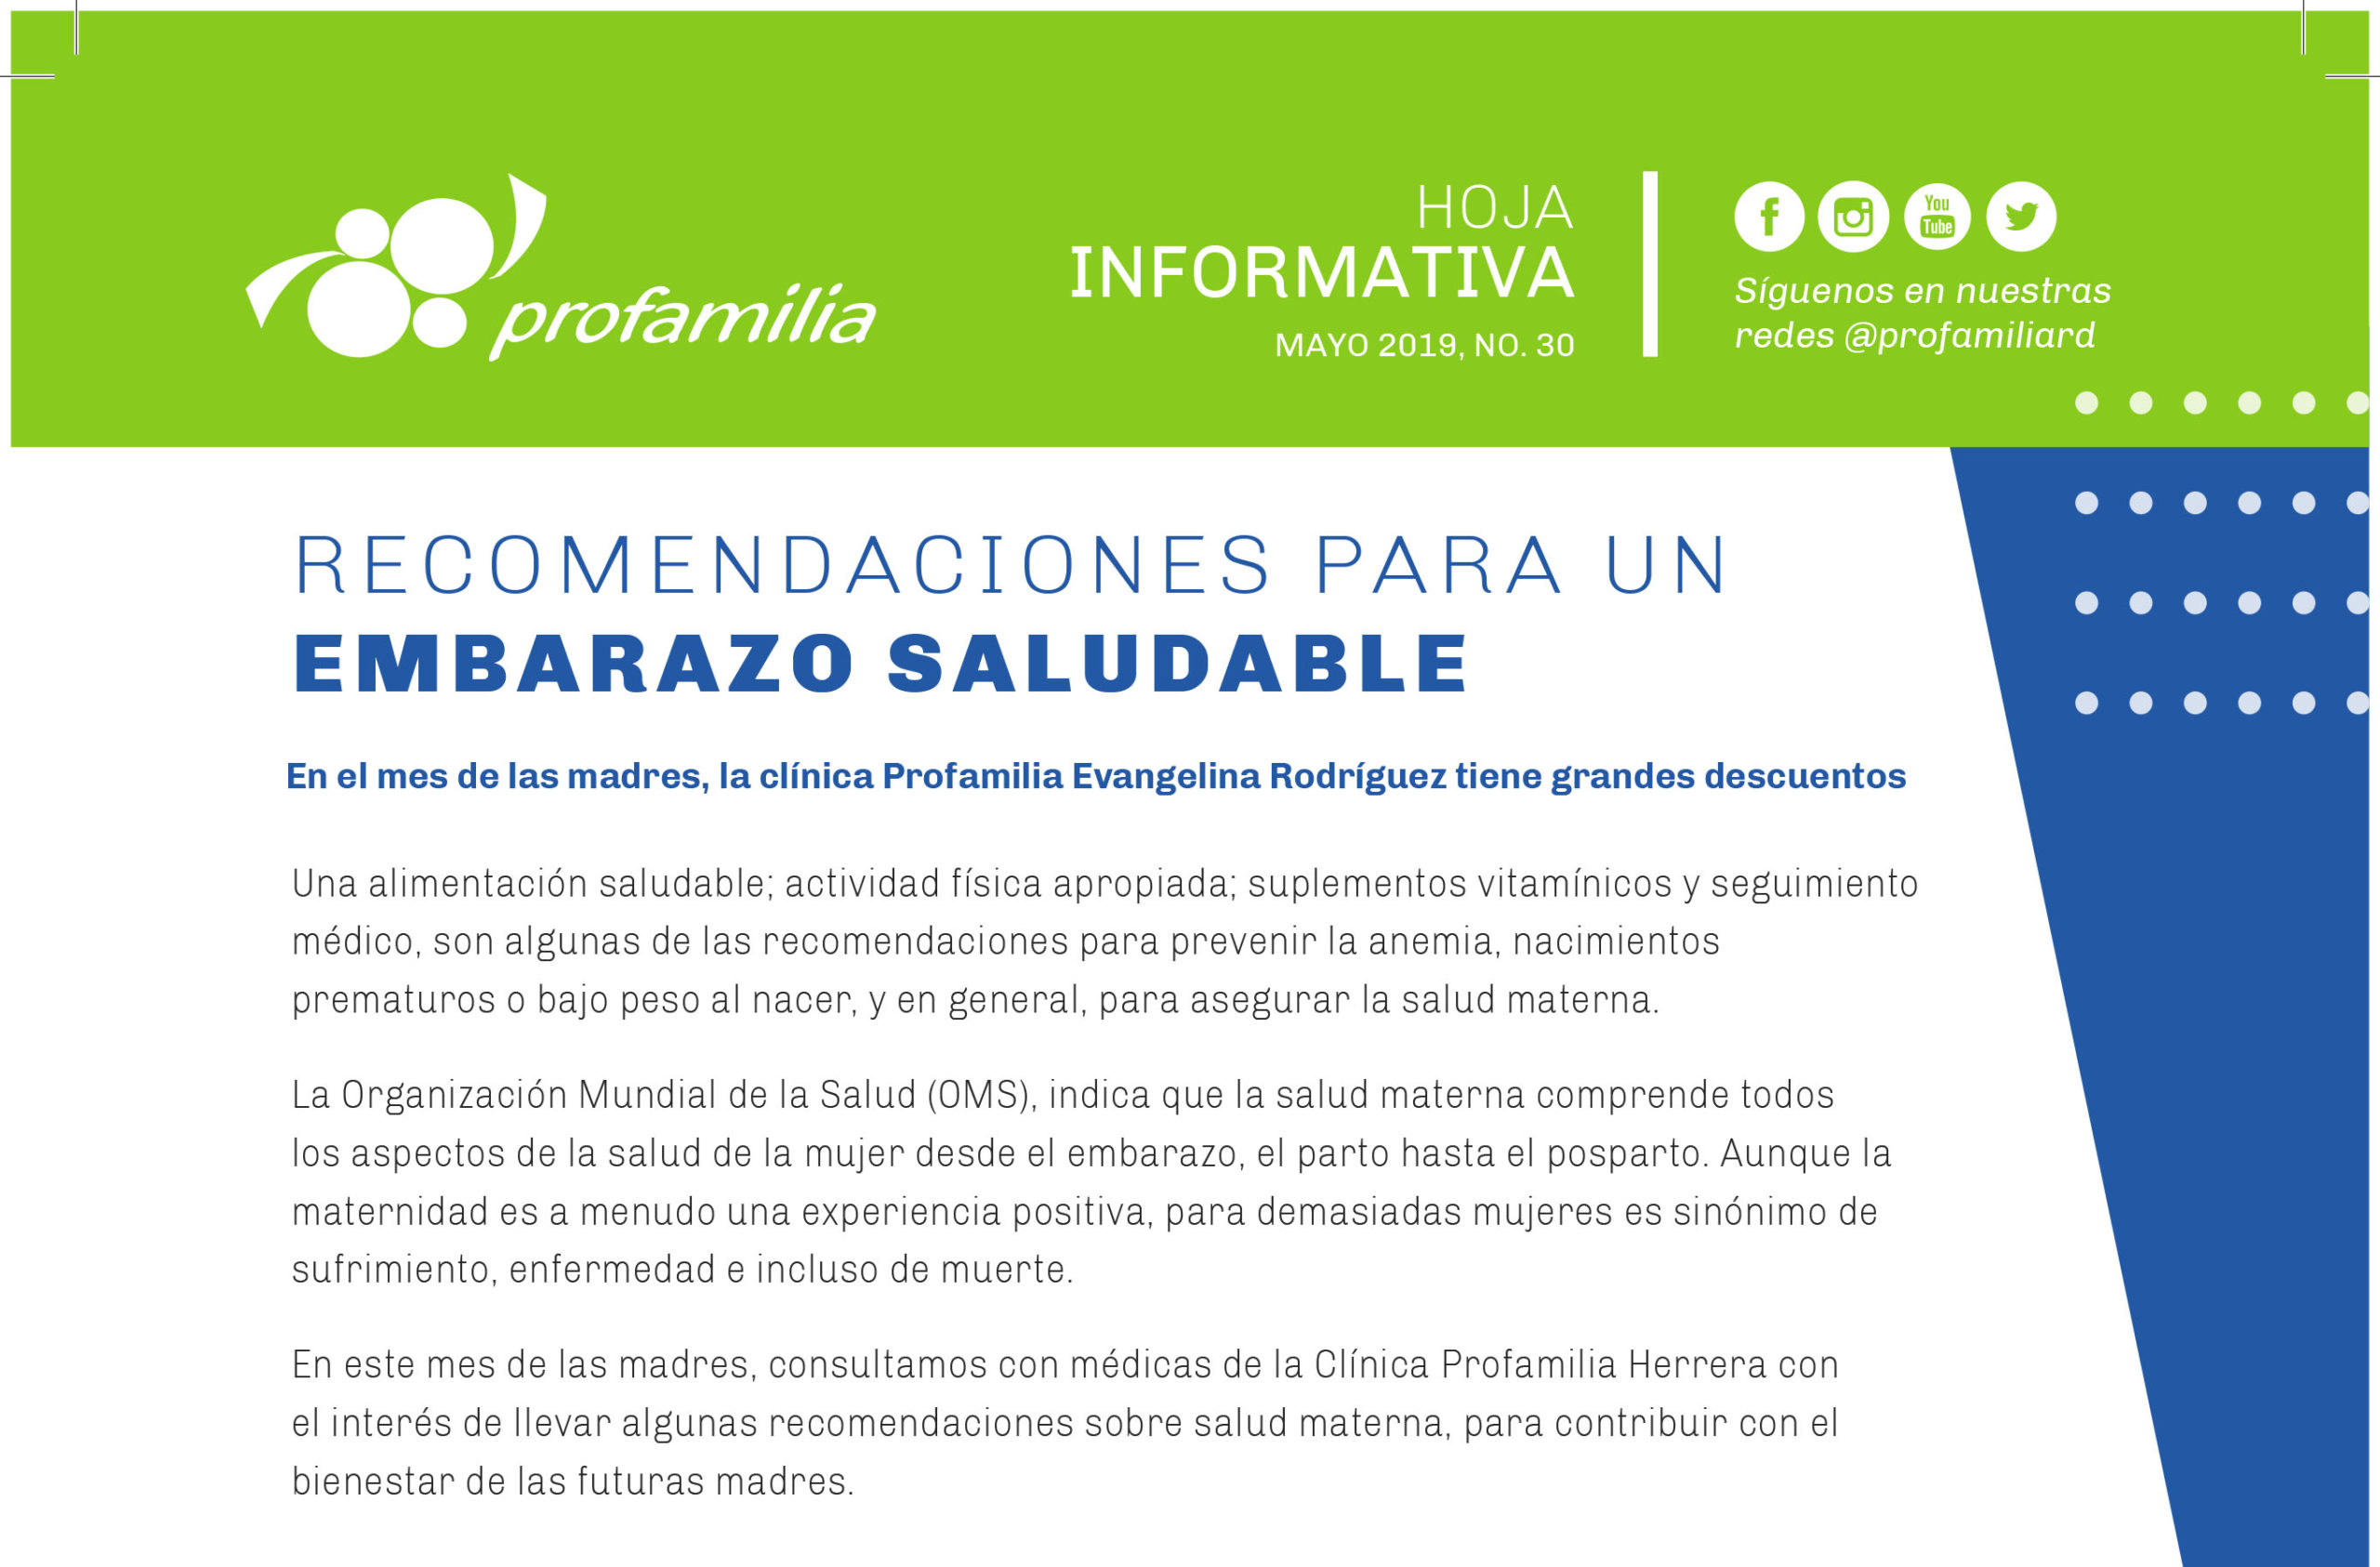 Hoja Informativa Clínica Evangelina Rodríguez: Recomendaciones para un embarazo saludable